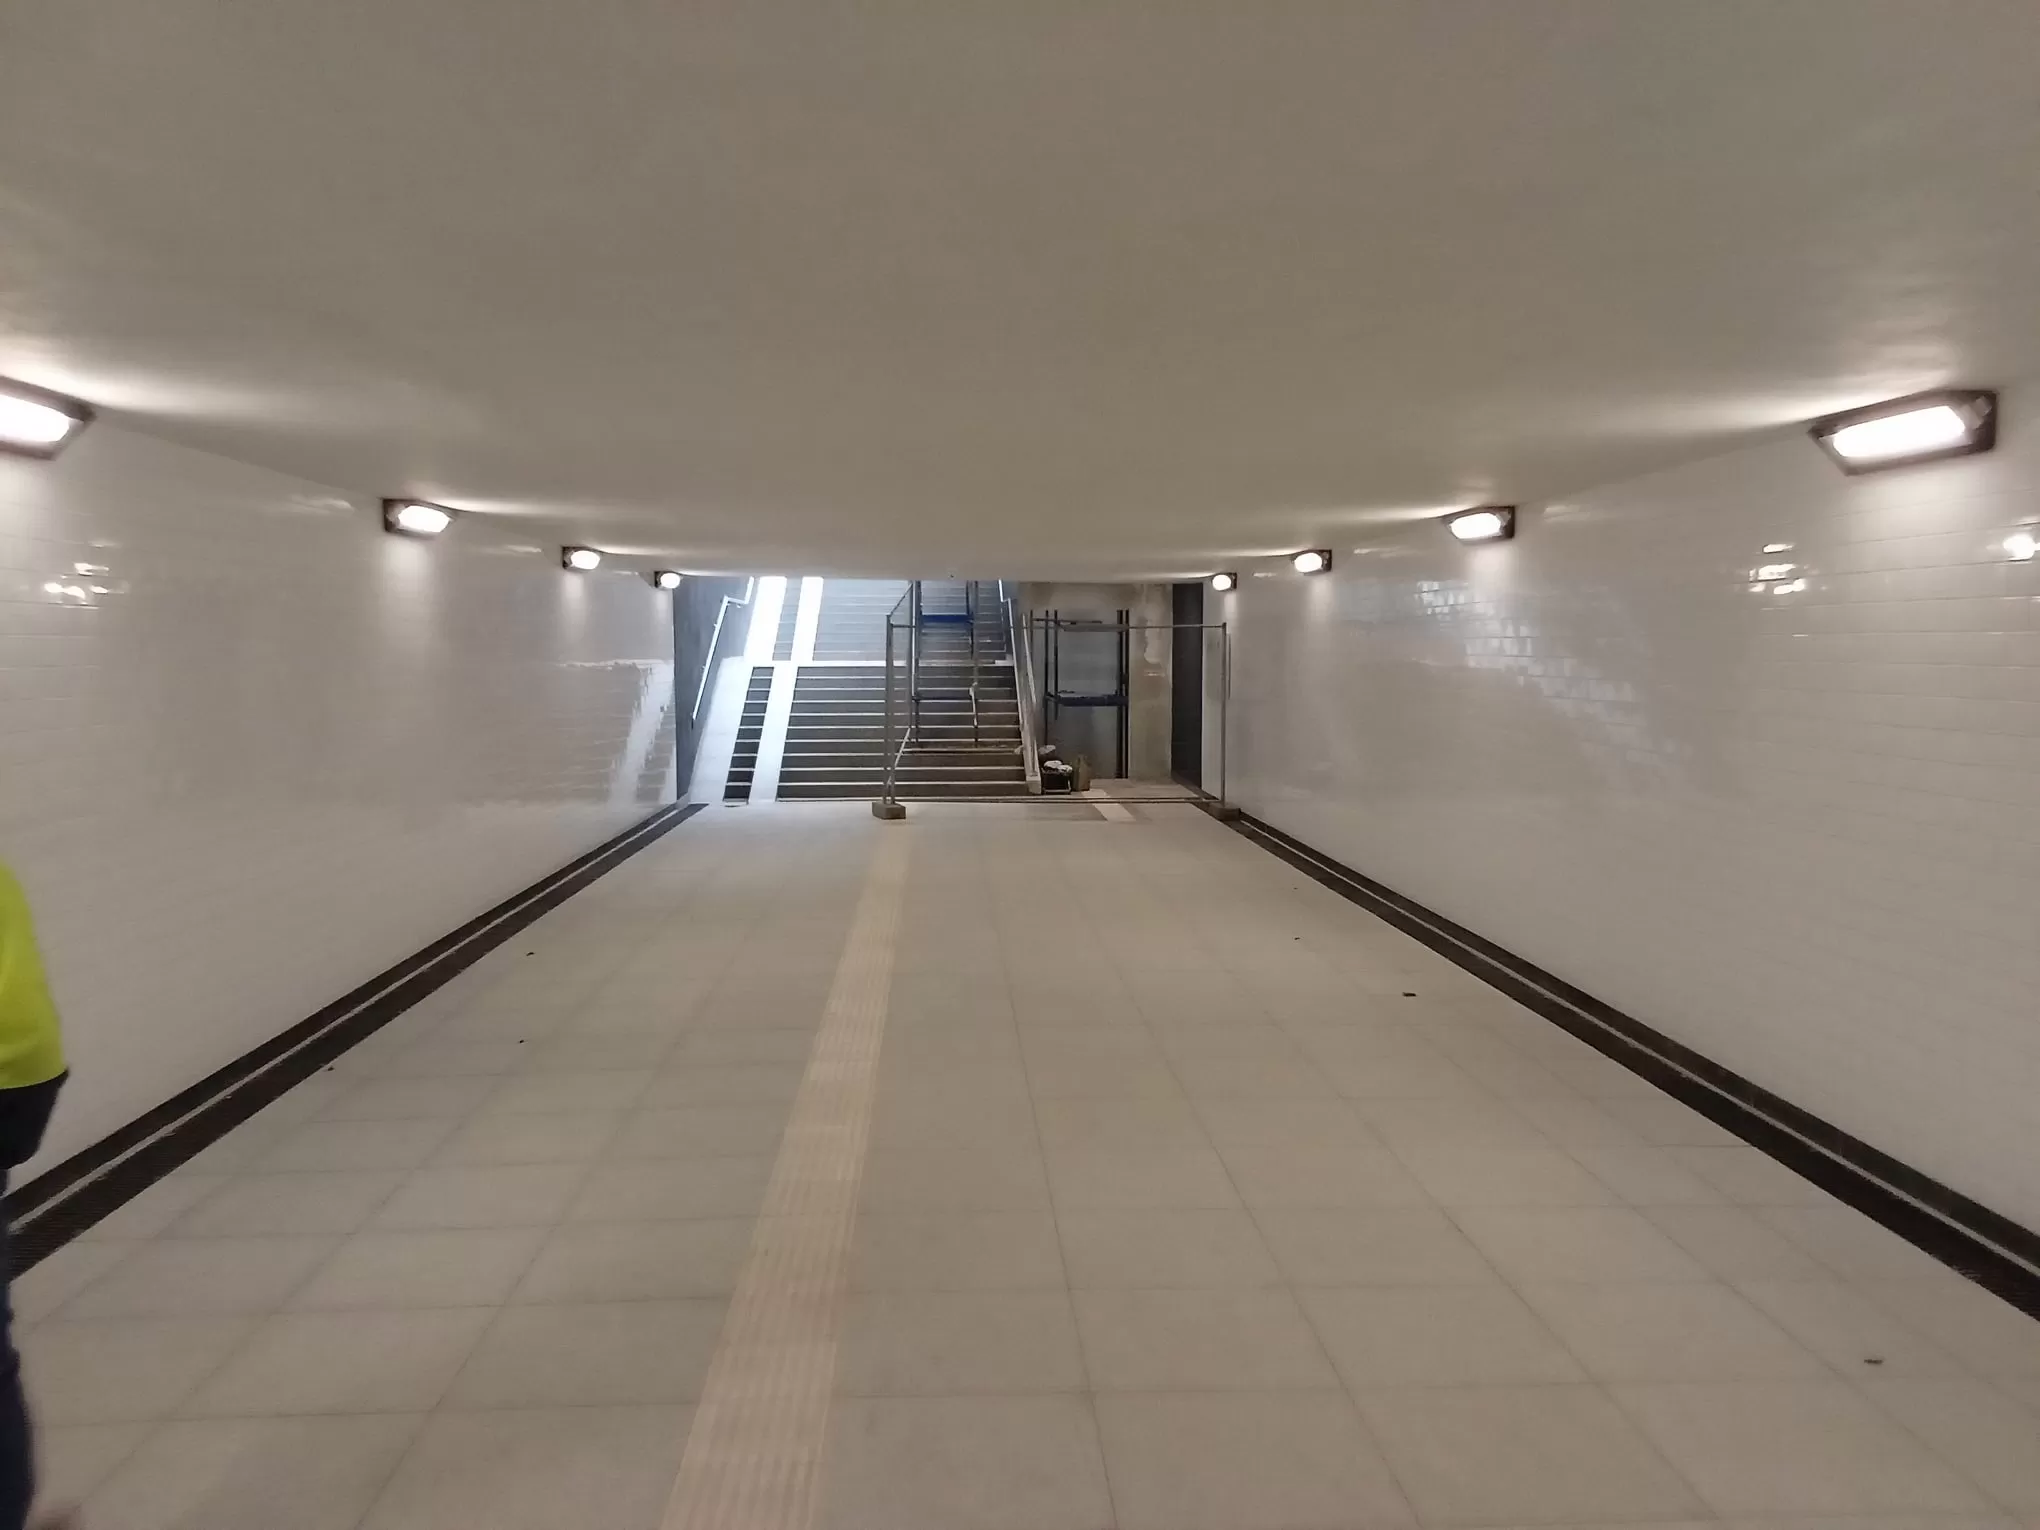 Tunel pod Al. Niepodległości – bezpieczny i dostosowany do osób z niepełnosprawnościami